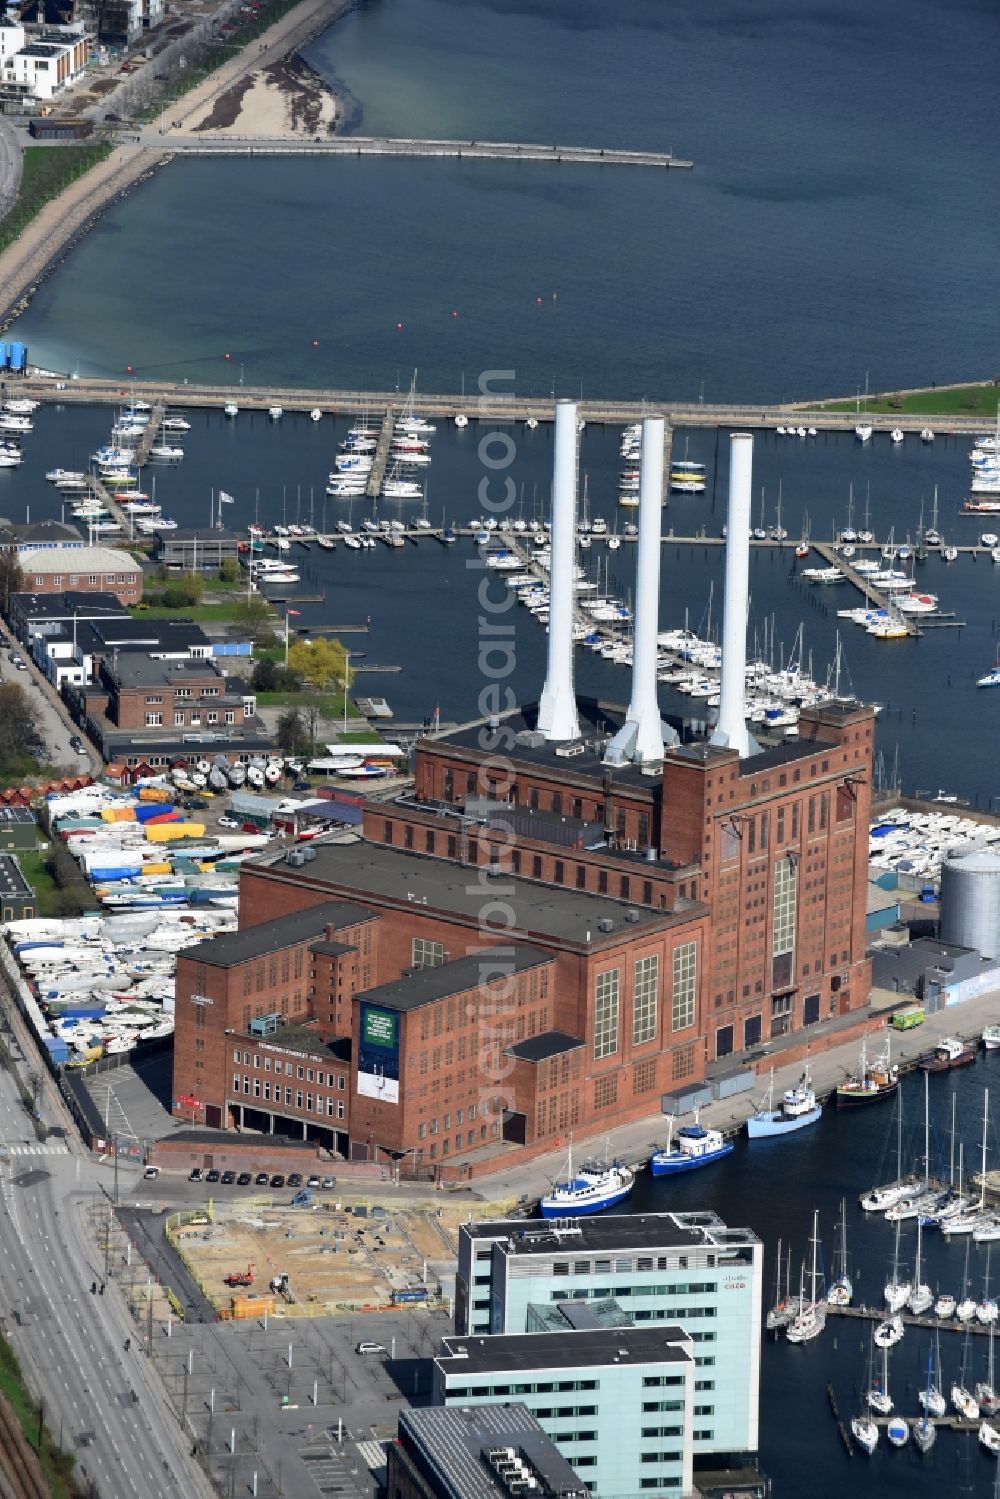 Kopenhagen from above - Power plants and exhaust towers of thermal power station Svanemollevaerket Lautrupsgade in Copenhagen in Region Hovedstaden, Denmark